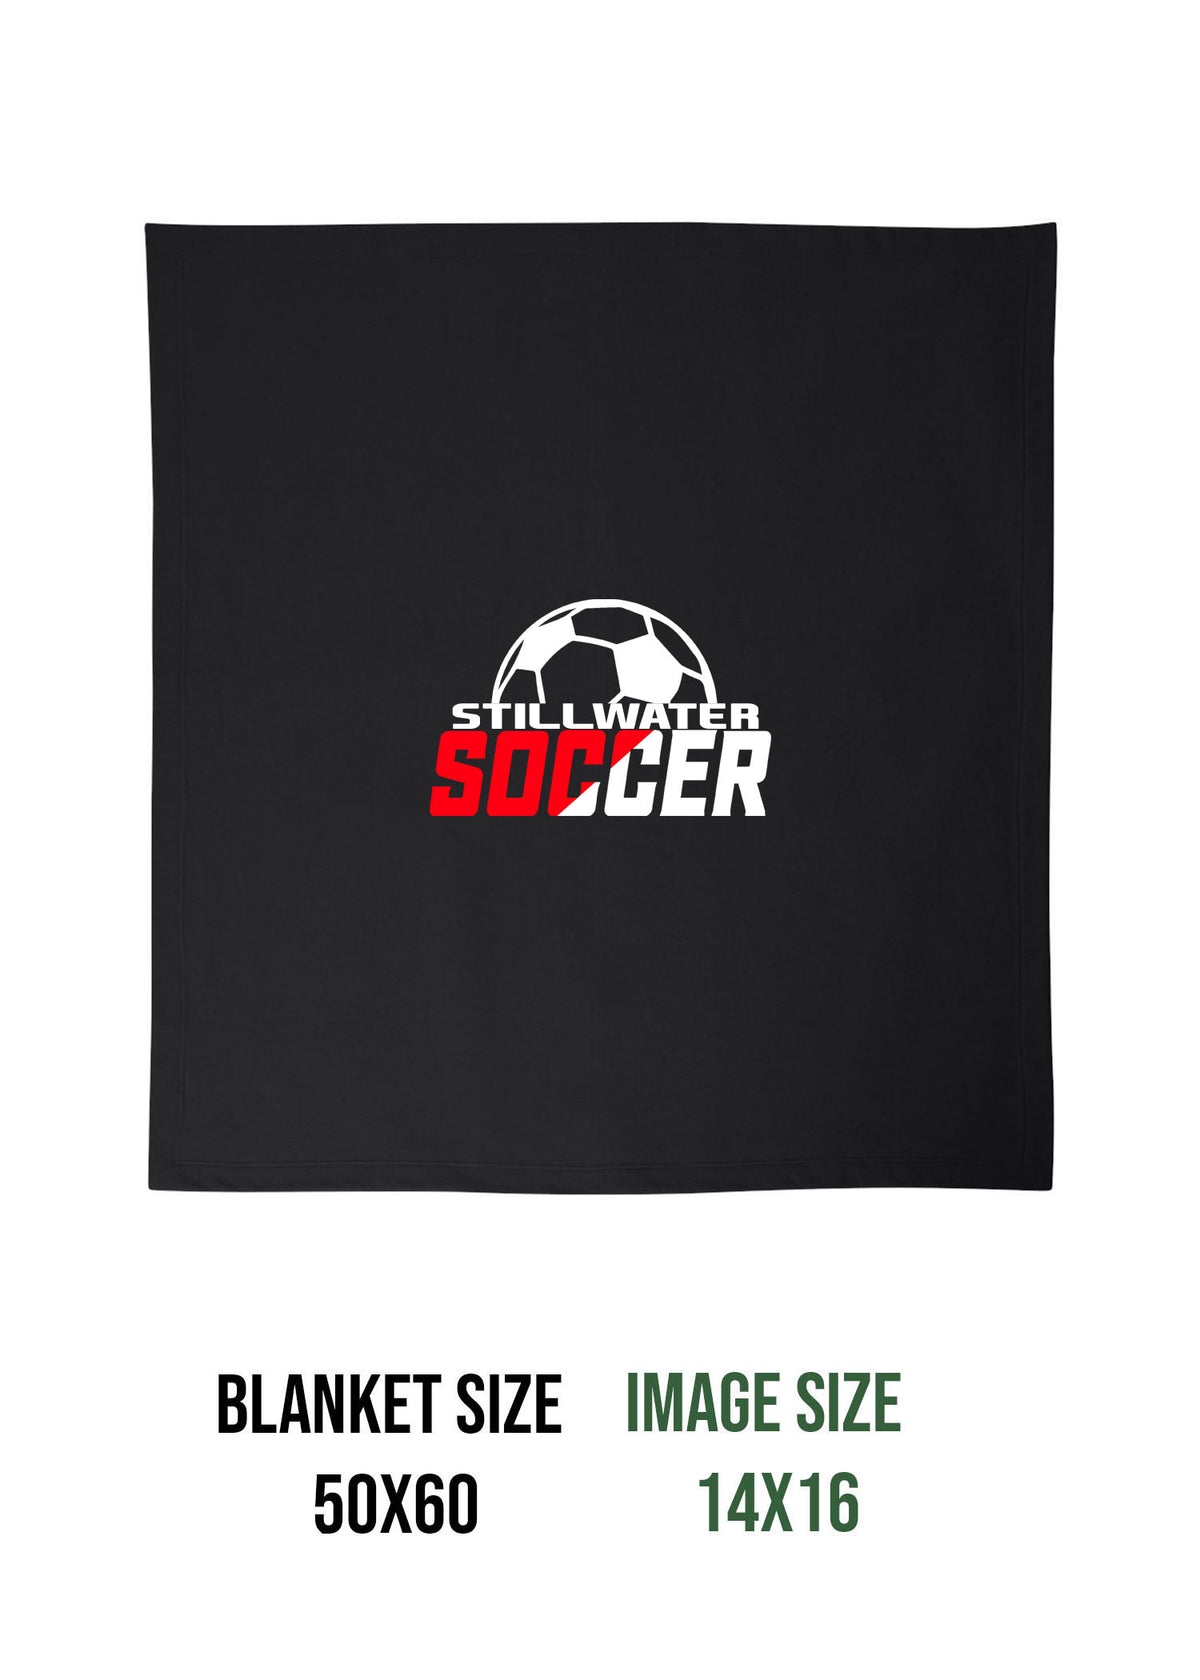 Stillwater Soccer Design 1 Blanket